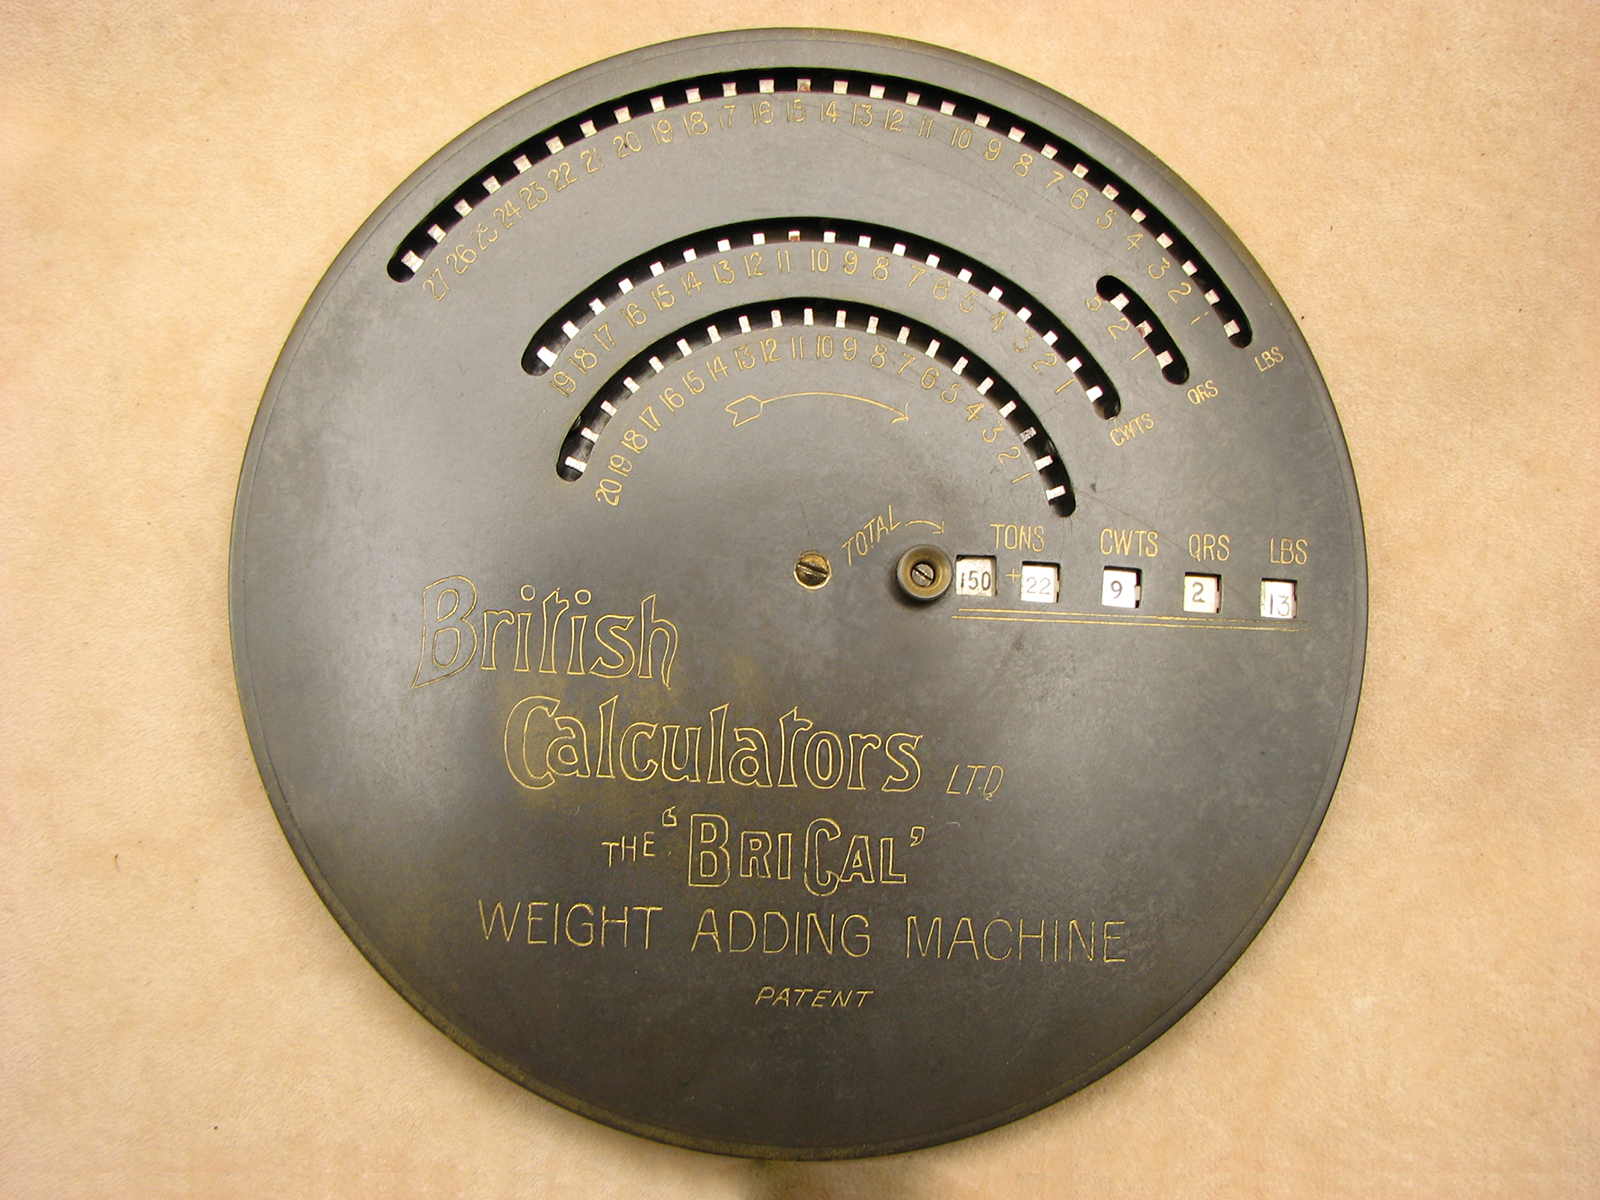 Rare BriCal Weight Adding Machine in original case. Circa 1910